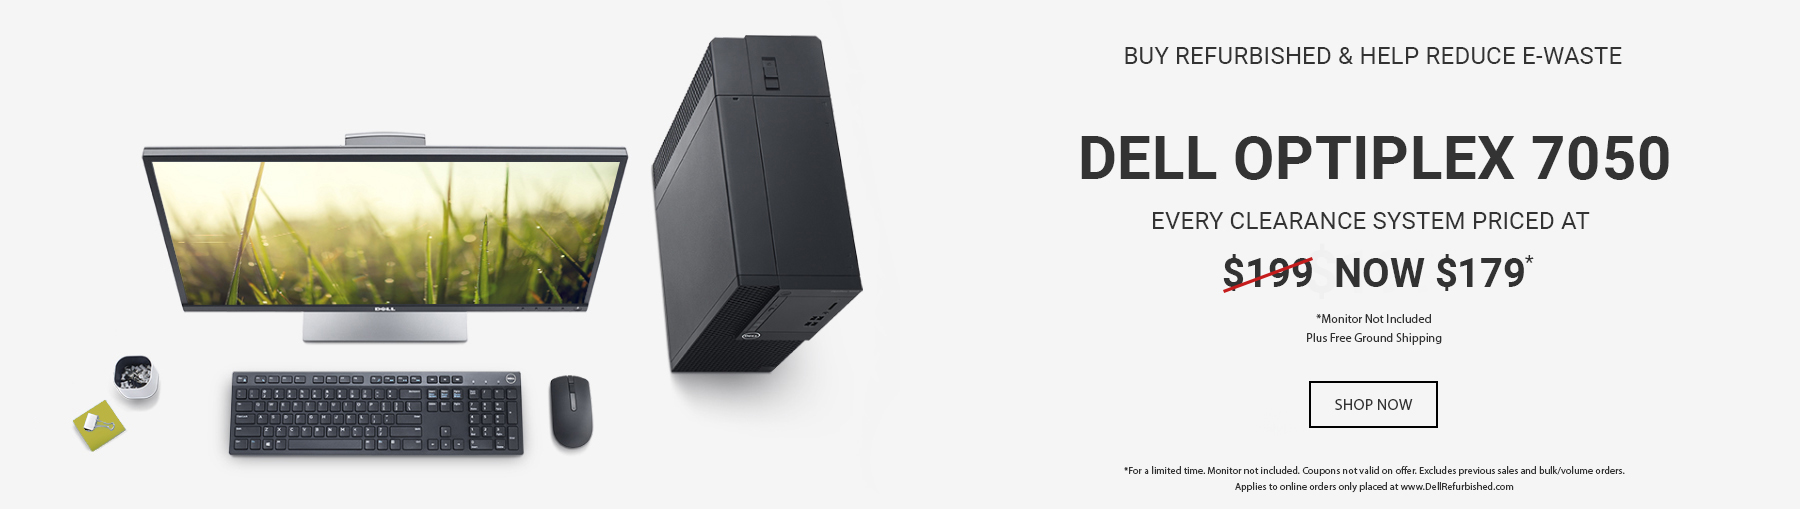 $179 Dell OptiPlex 7050 Desktops